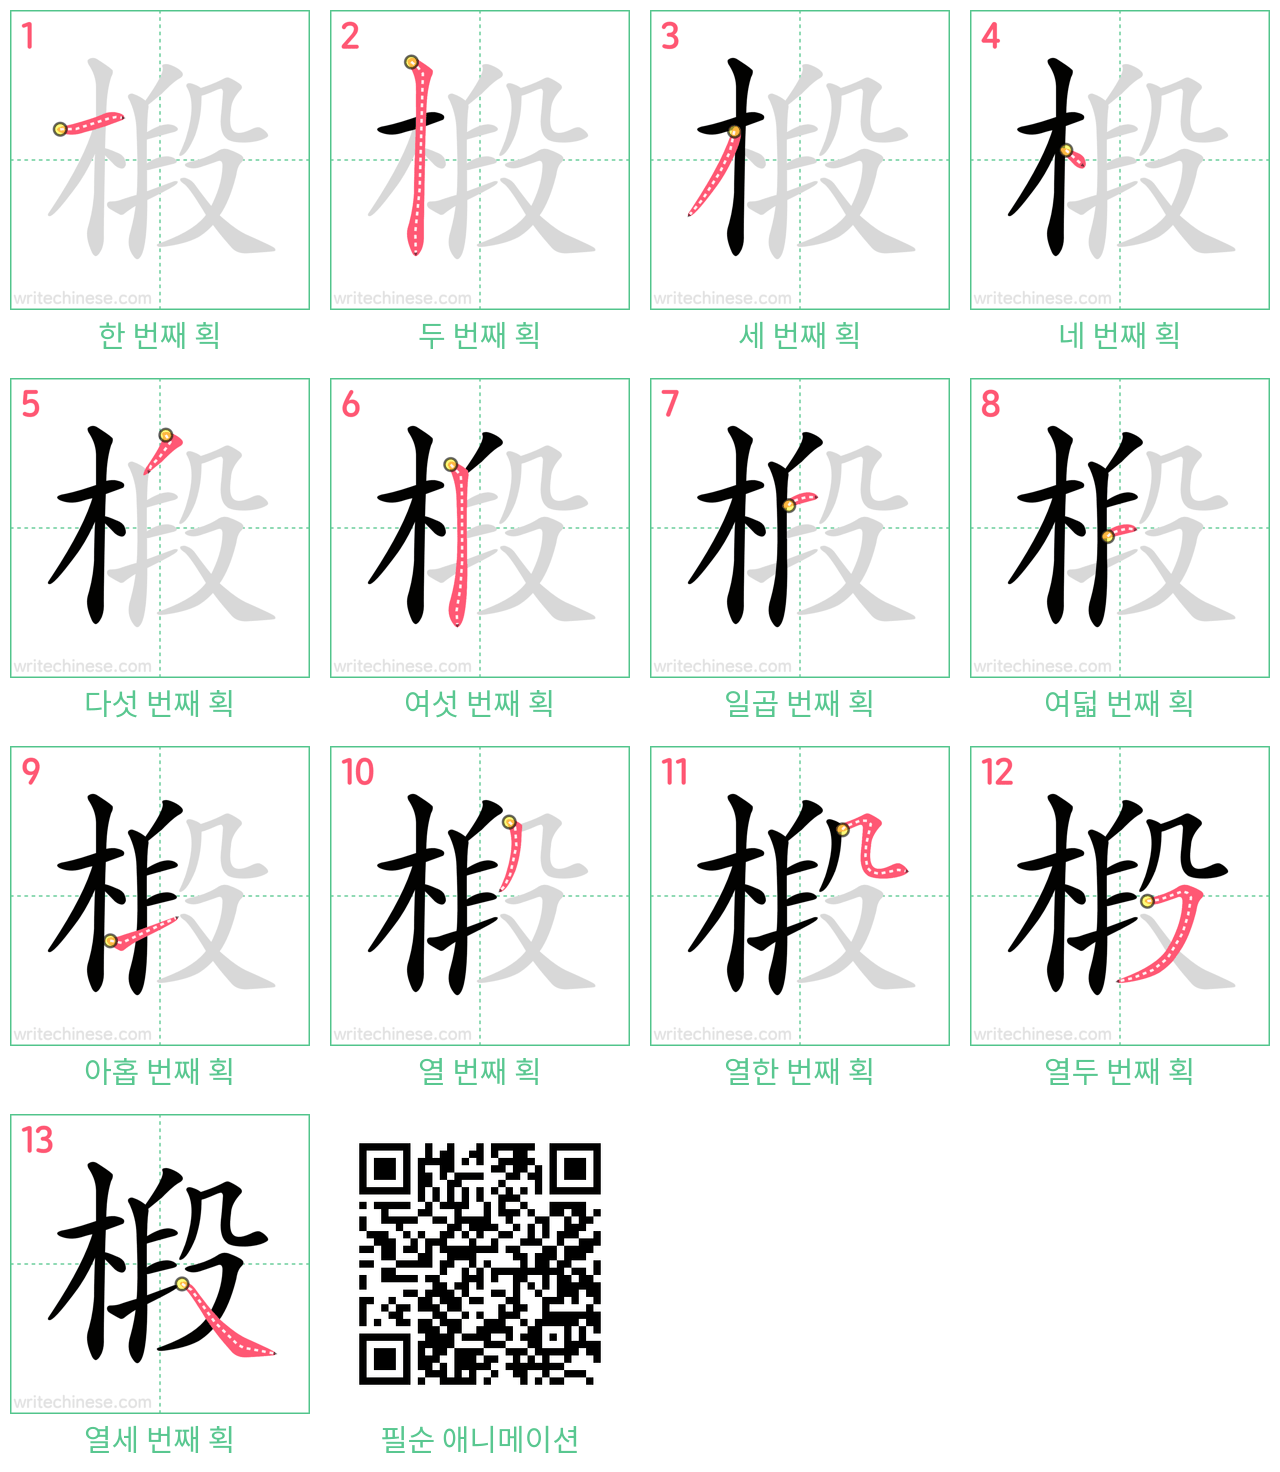 椴 step-by-step stroke order diagrams